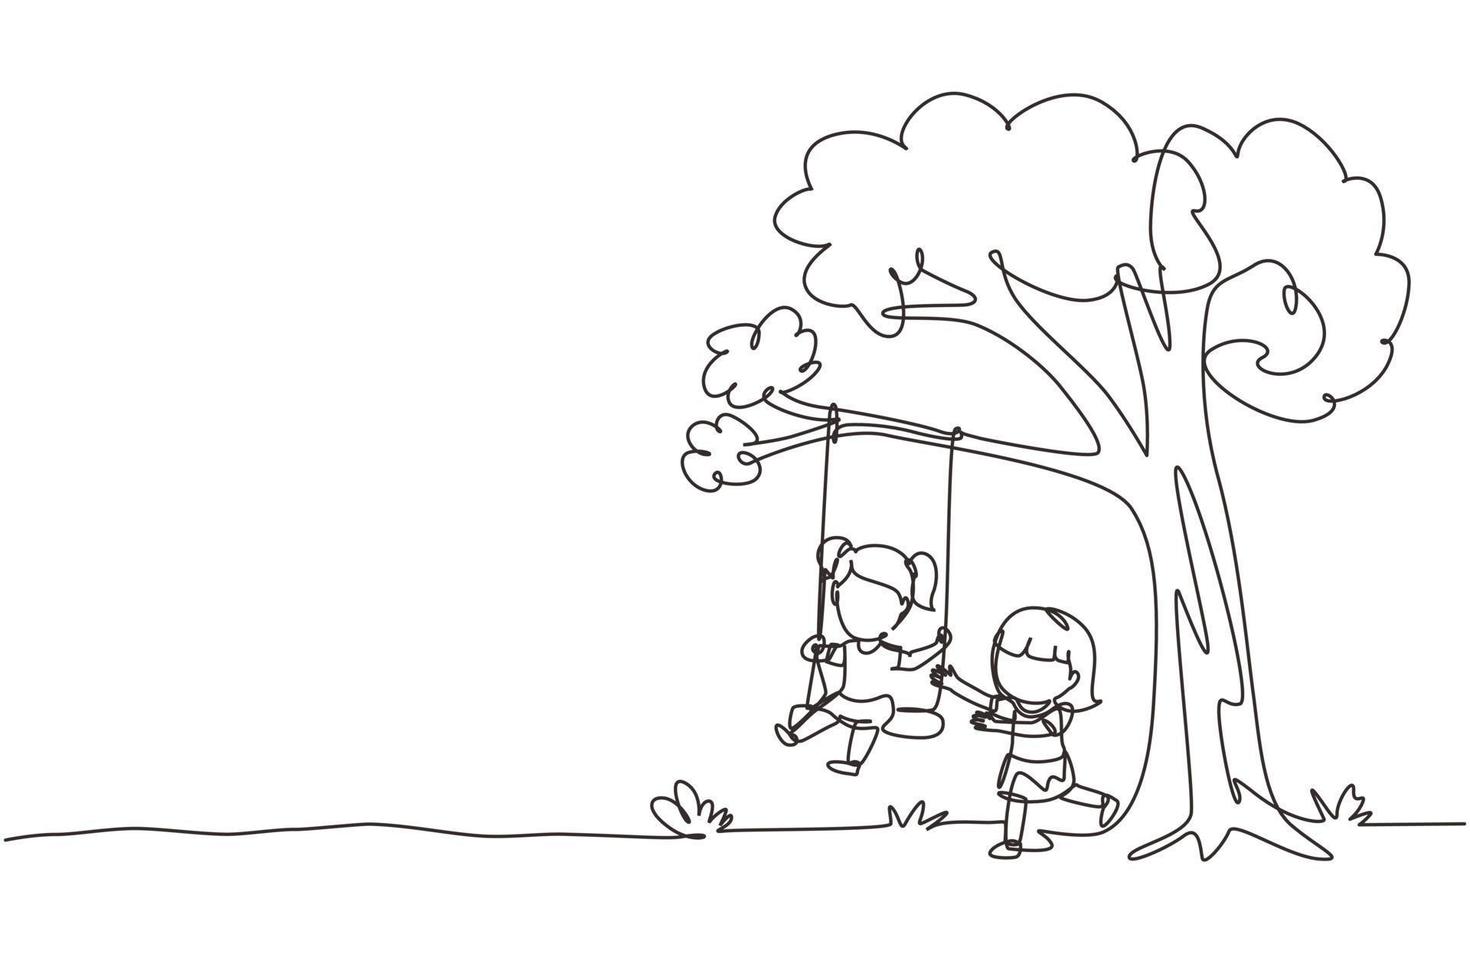 único desenho de uma linha feliz duas meninas brincando no balanço da árvore. crianças alegres balançando debaixo de uma árvore. crianças brincando no playground. ilustração em vetor gráfico de desenho de linha contínua moderna